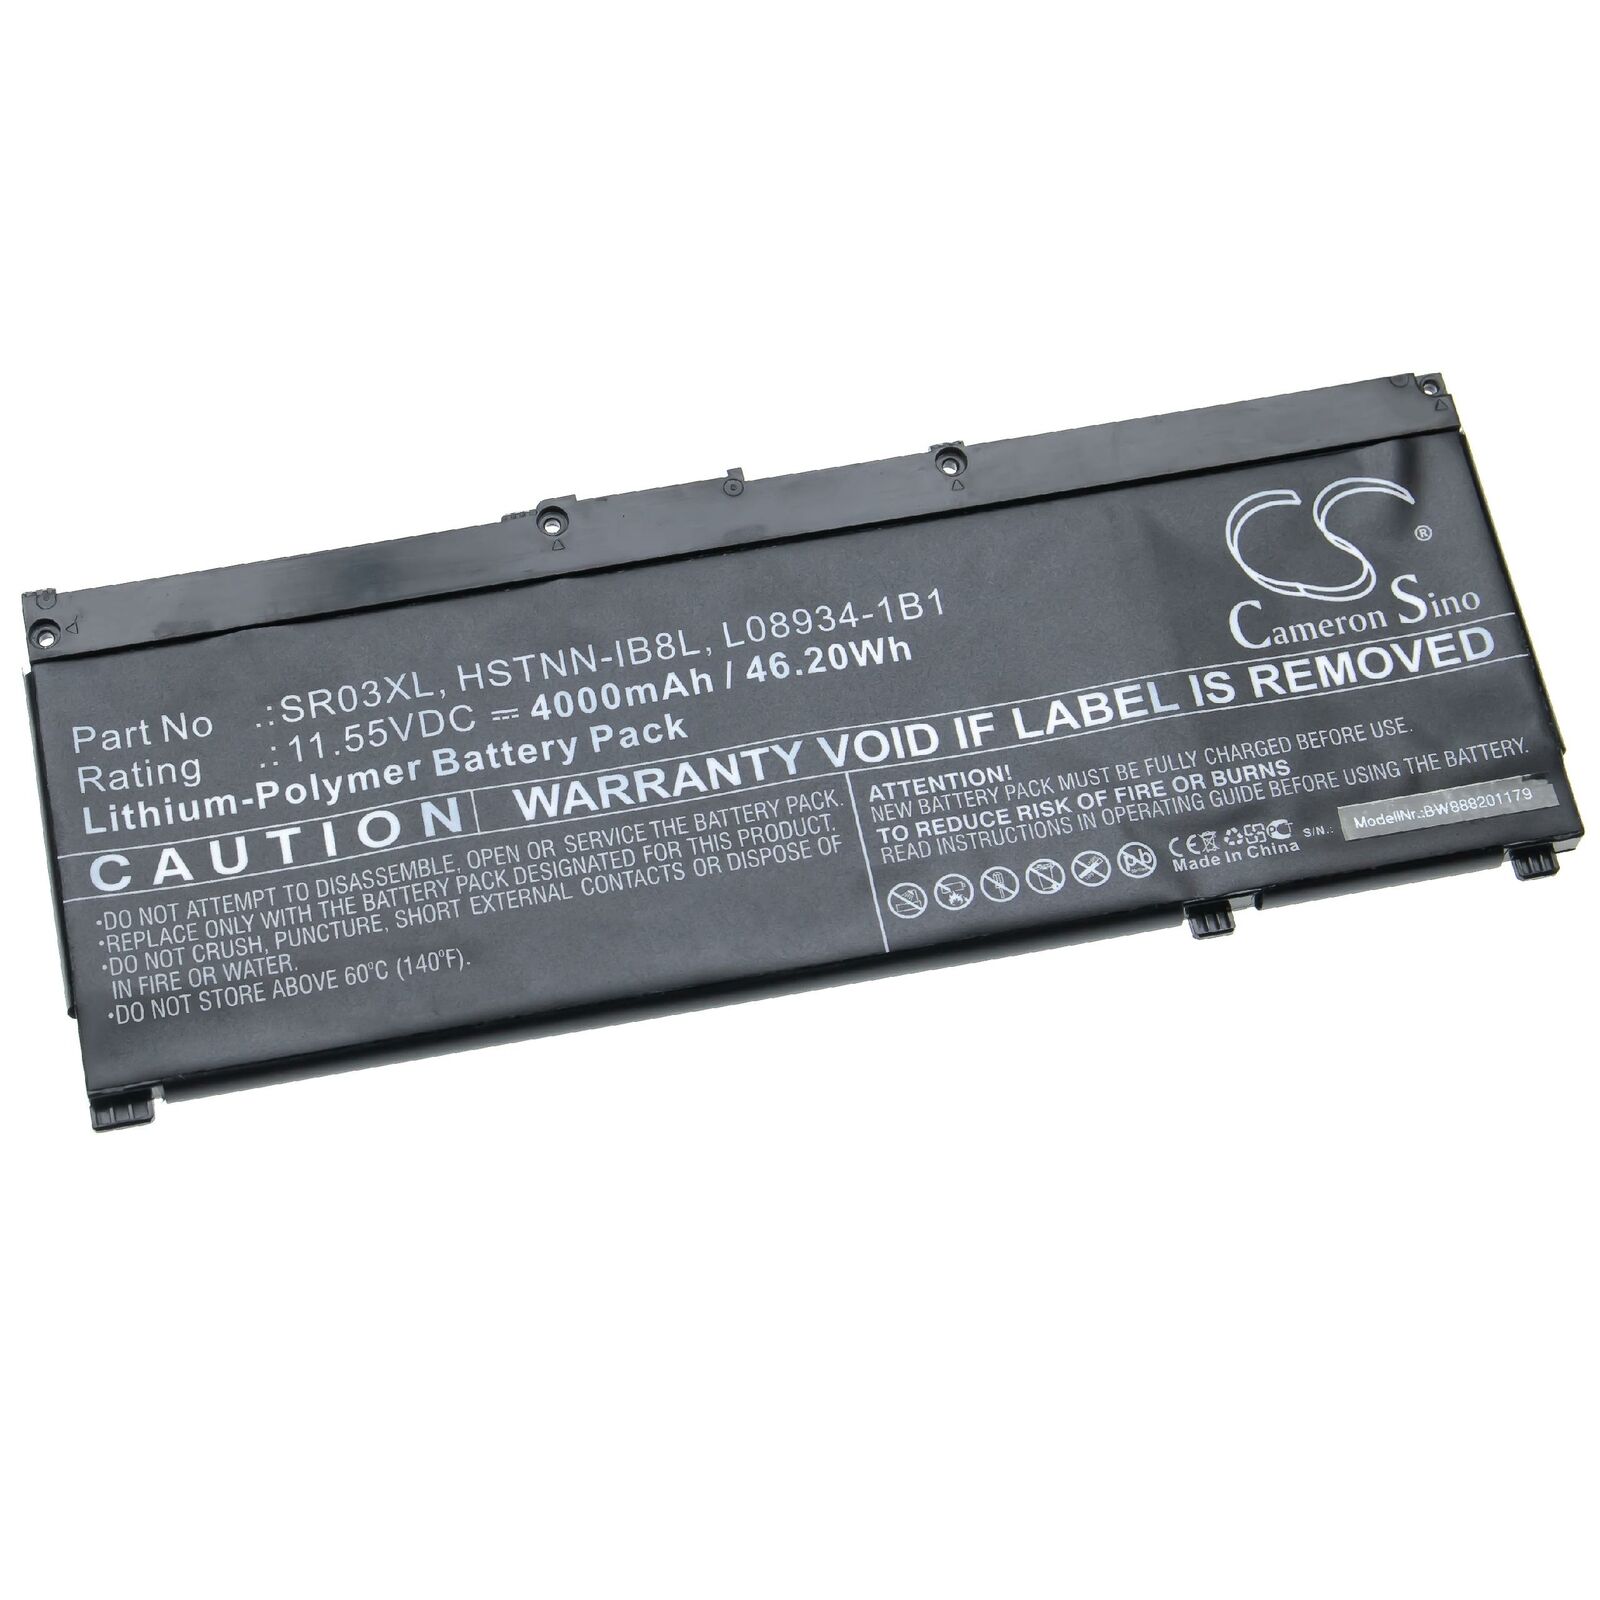 HP 11.55V HSTNN-IB8L, L08855-855, L08934-1B1, SR03XL (kompatibelt batteri)